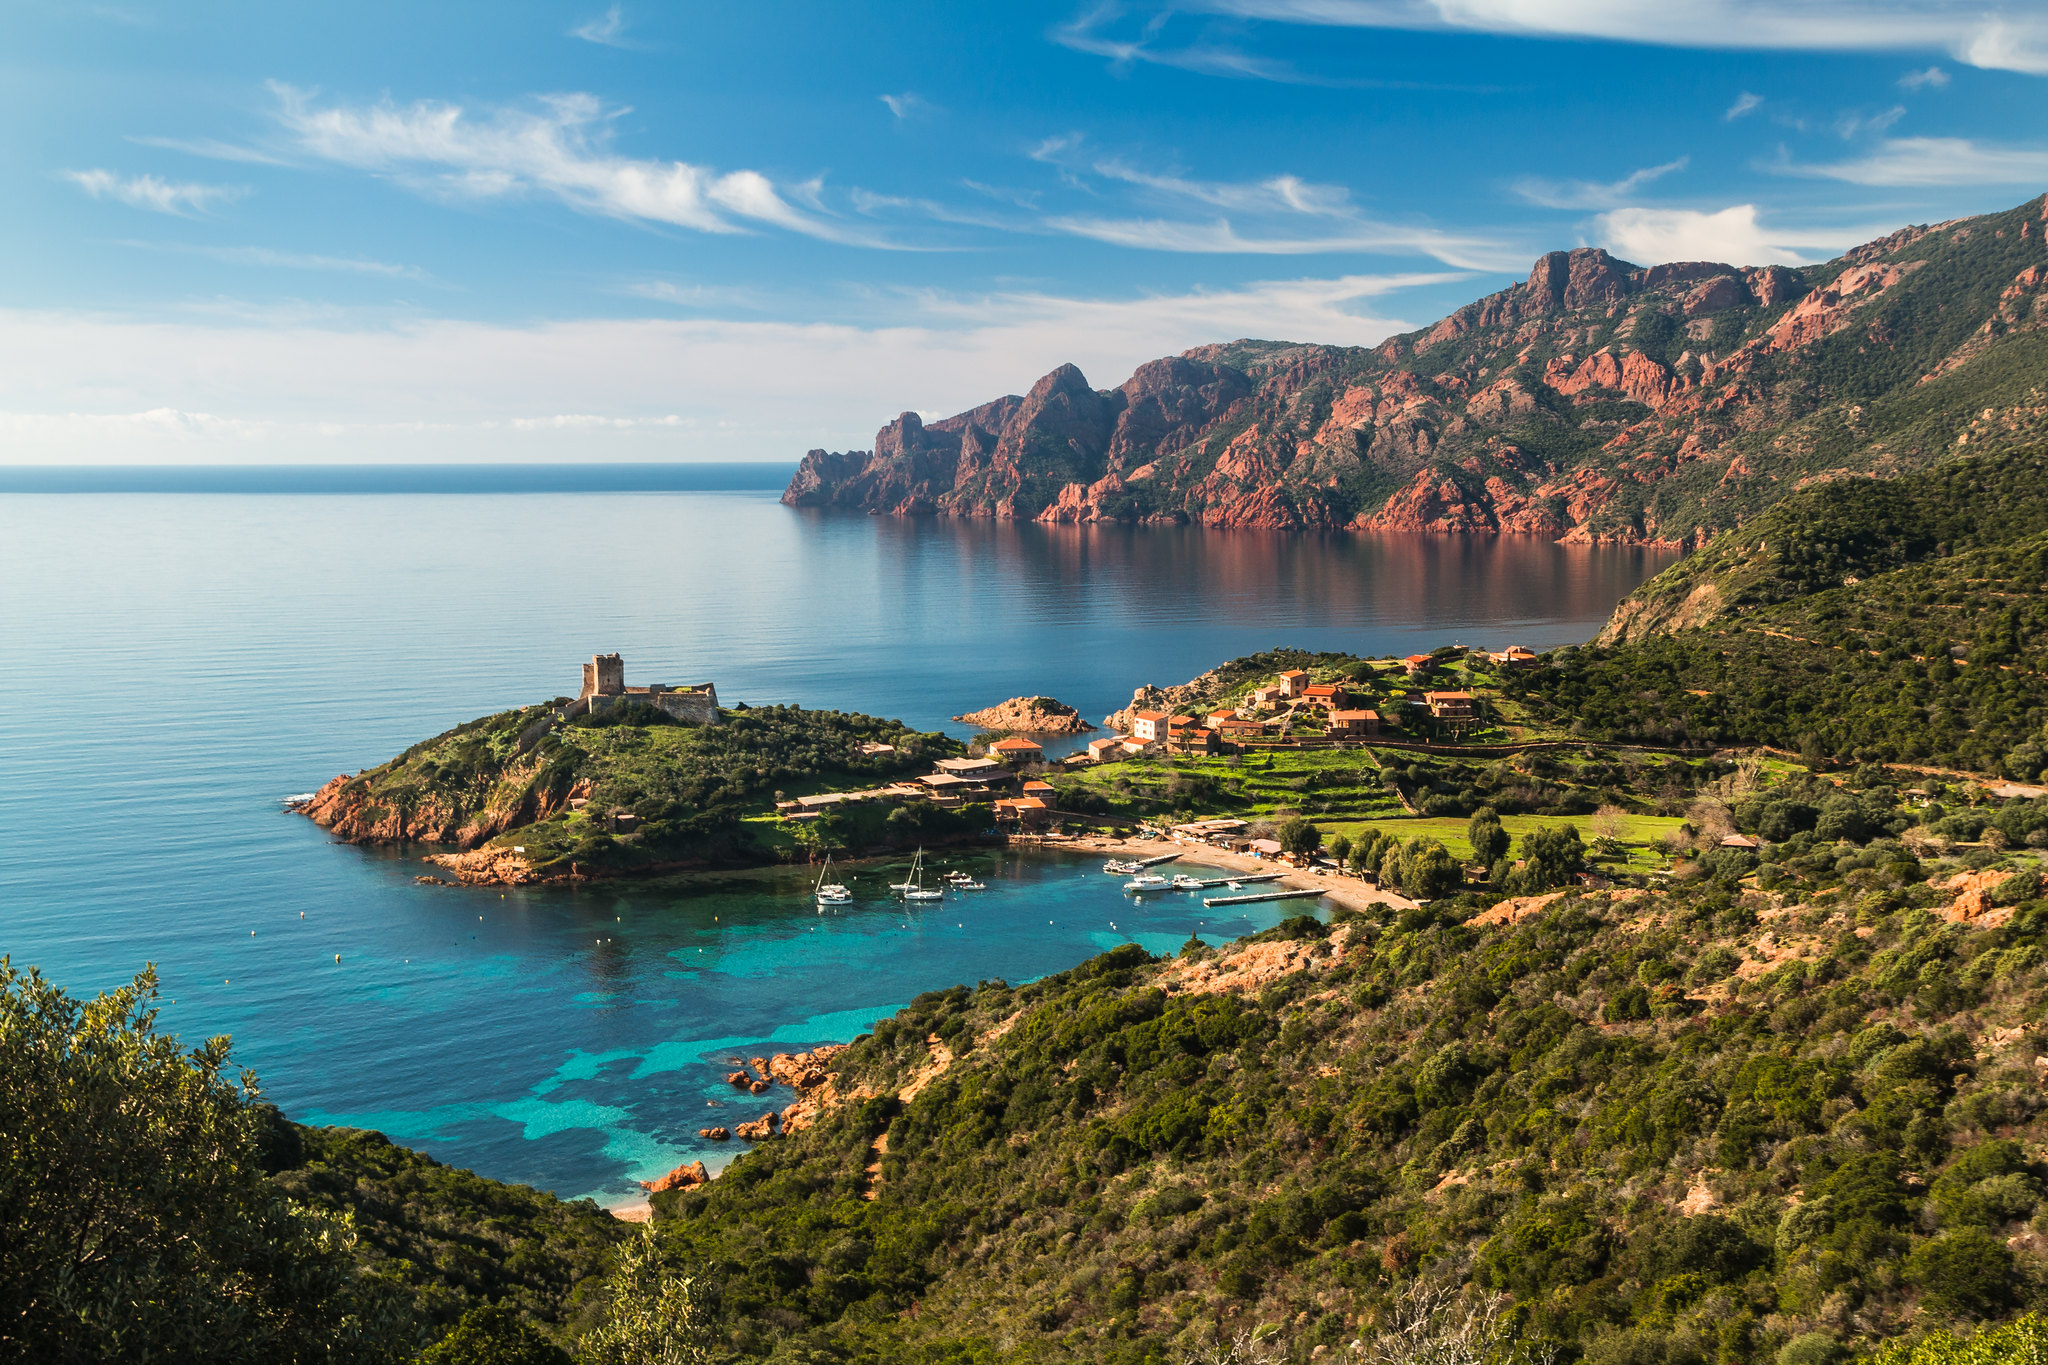 Paysage de Girolata avec mer turquoise, bateaux amarrés, falaises au loin